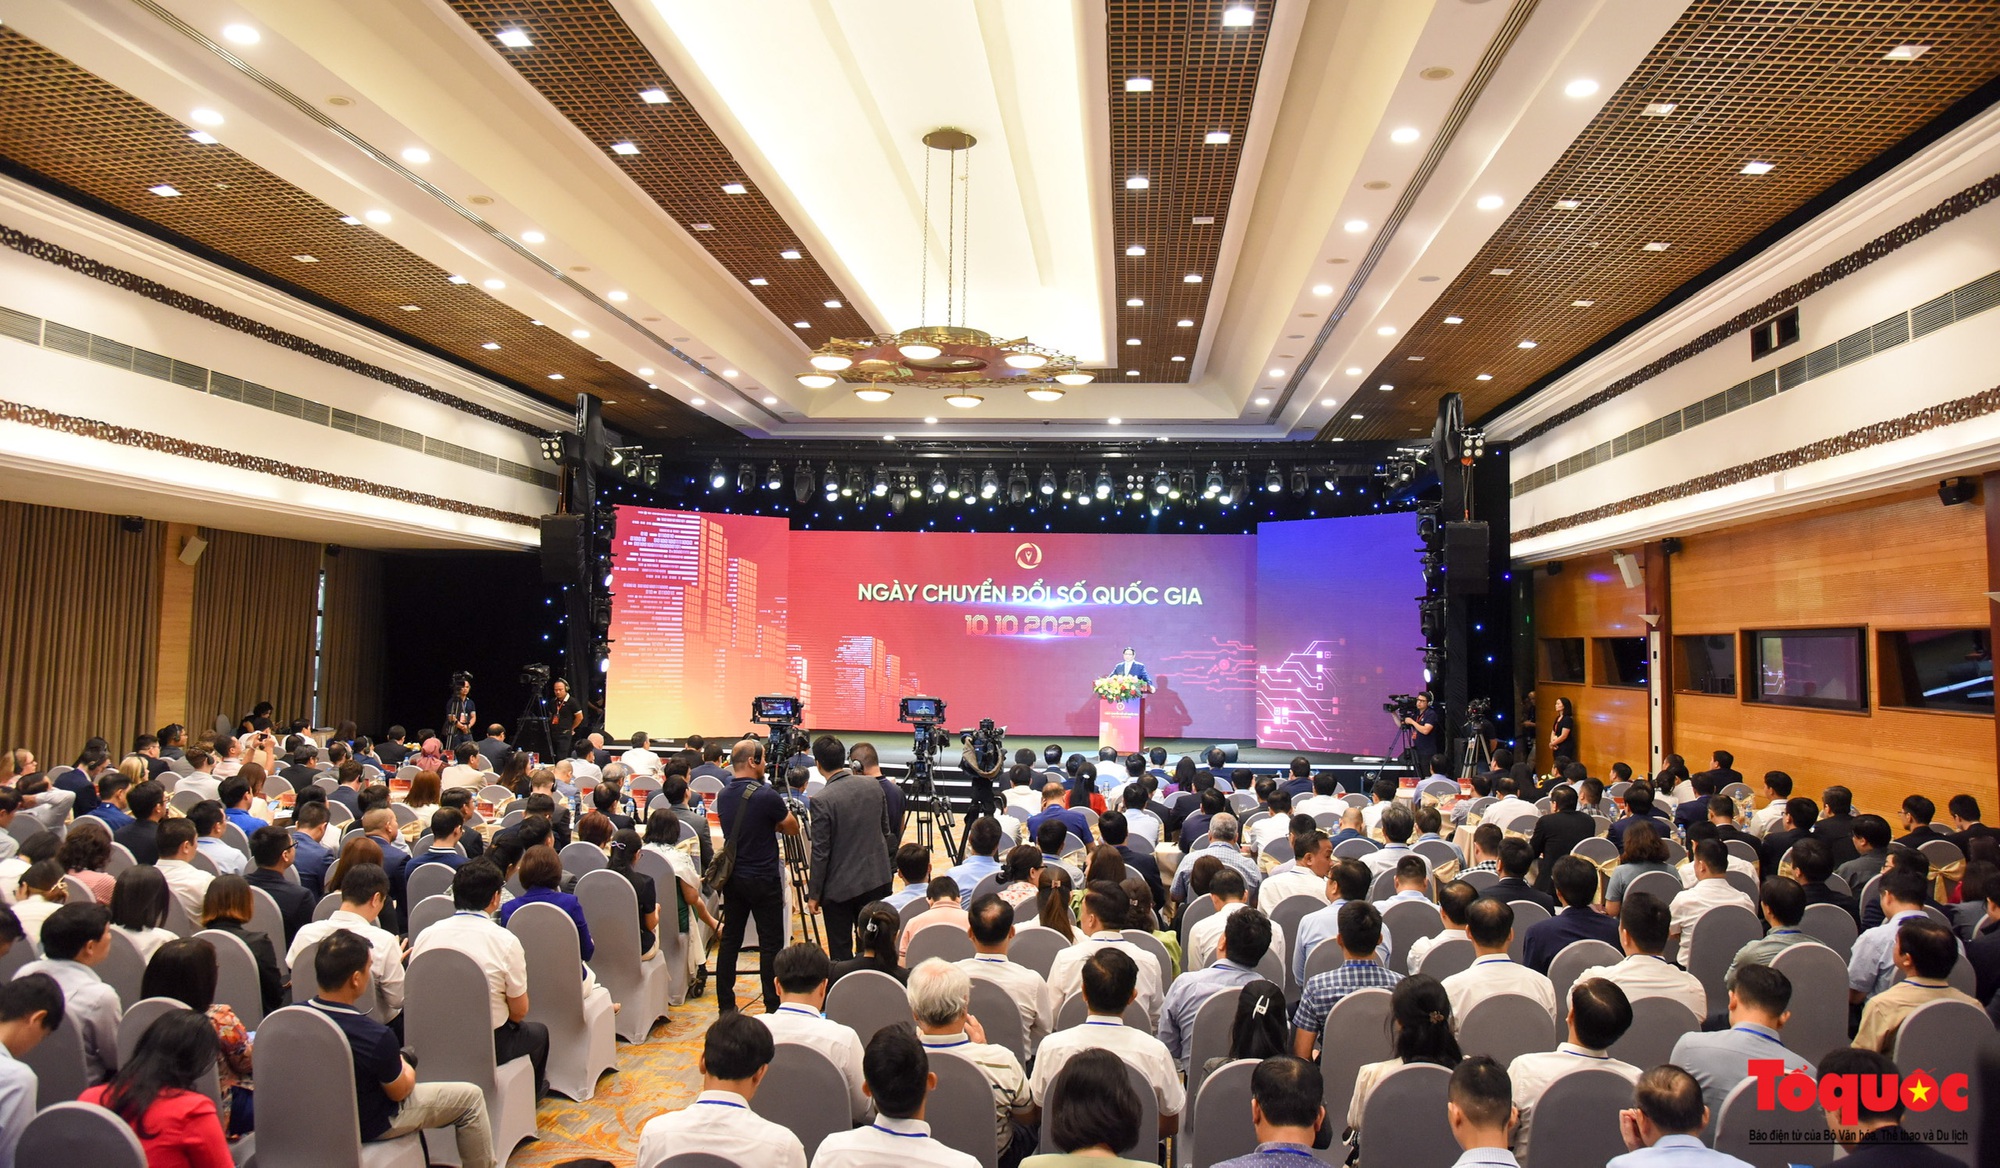 Chùm ảnh: Thủ tướng Phạm Minh Chính dự Ngày Chuyển đổi số quốc gia năm 2023